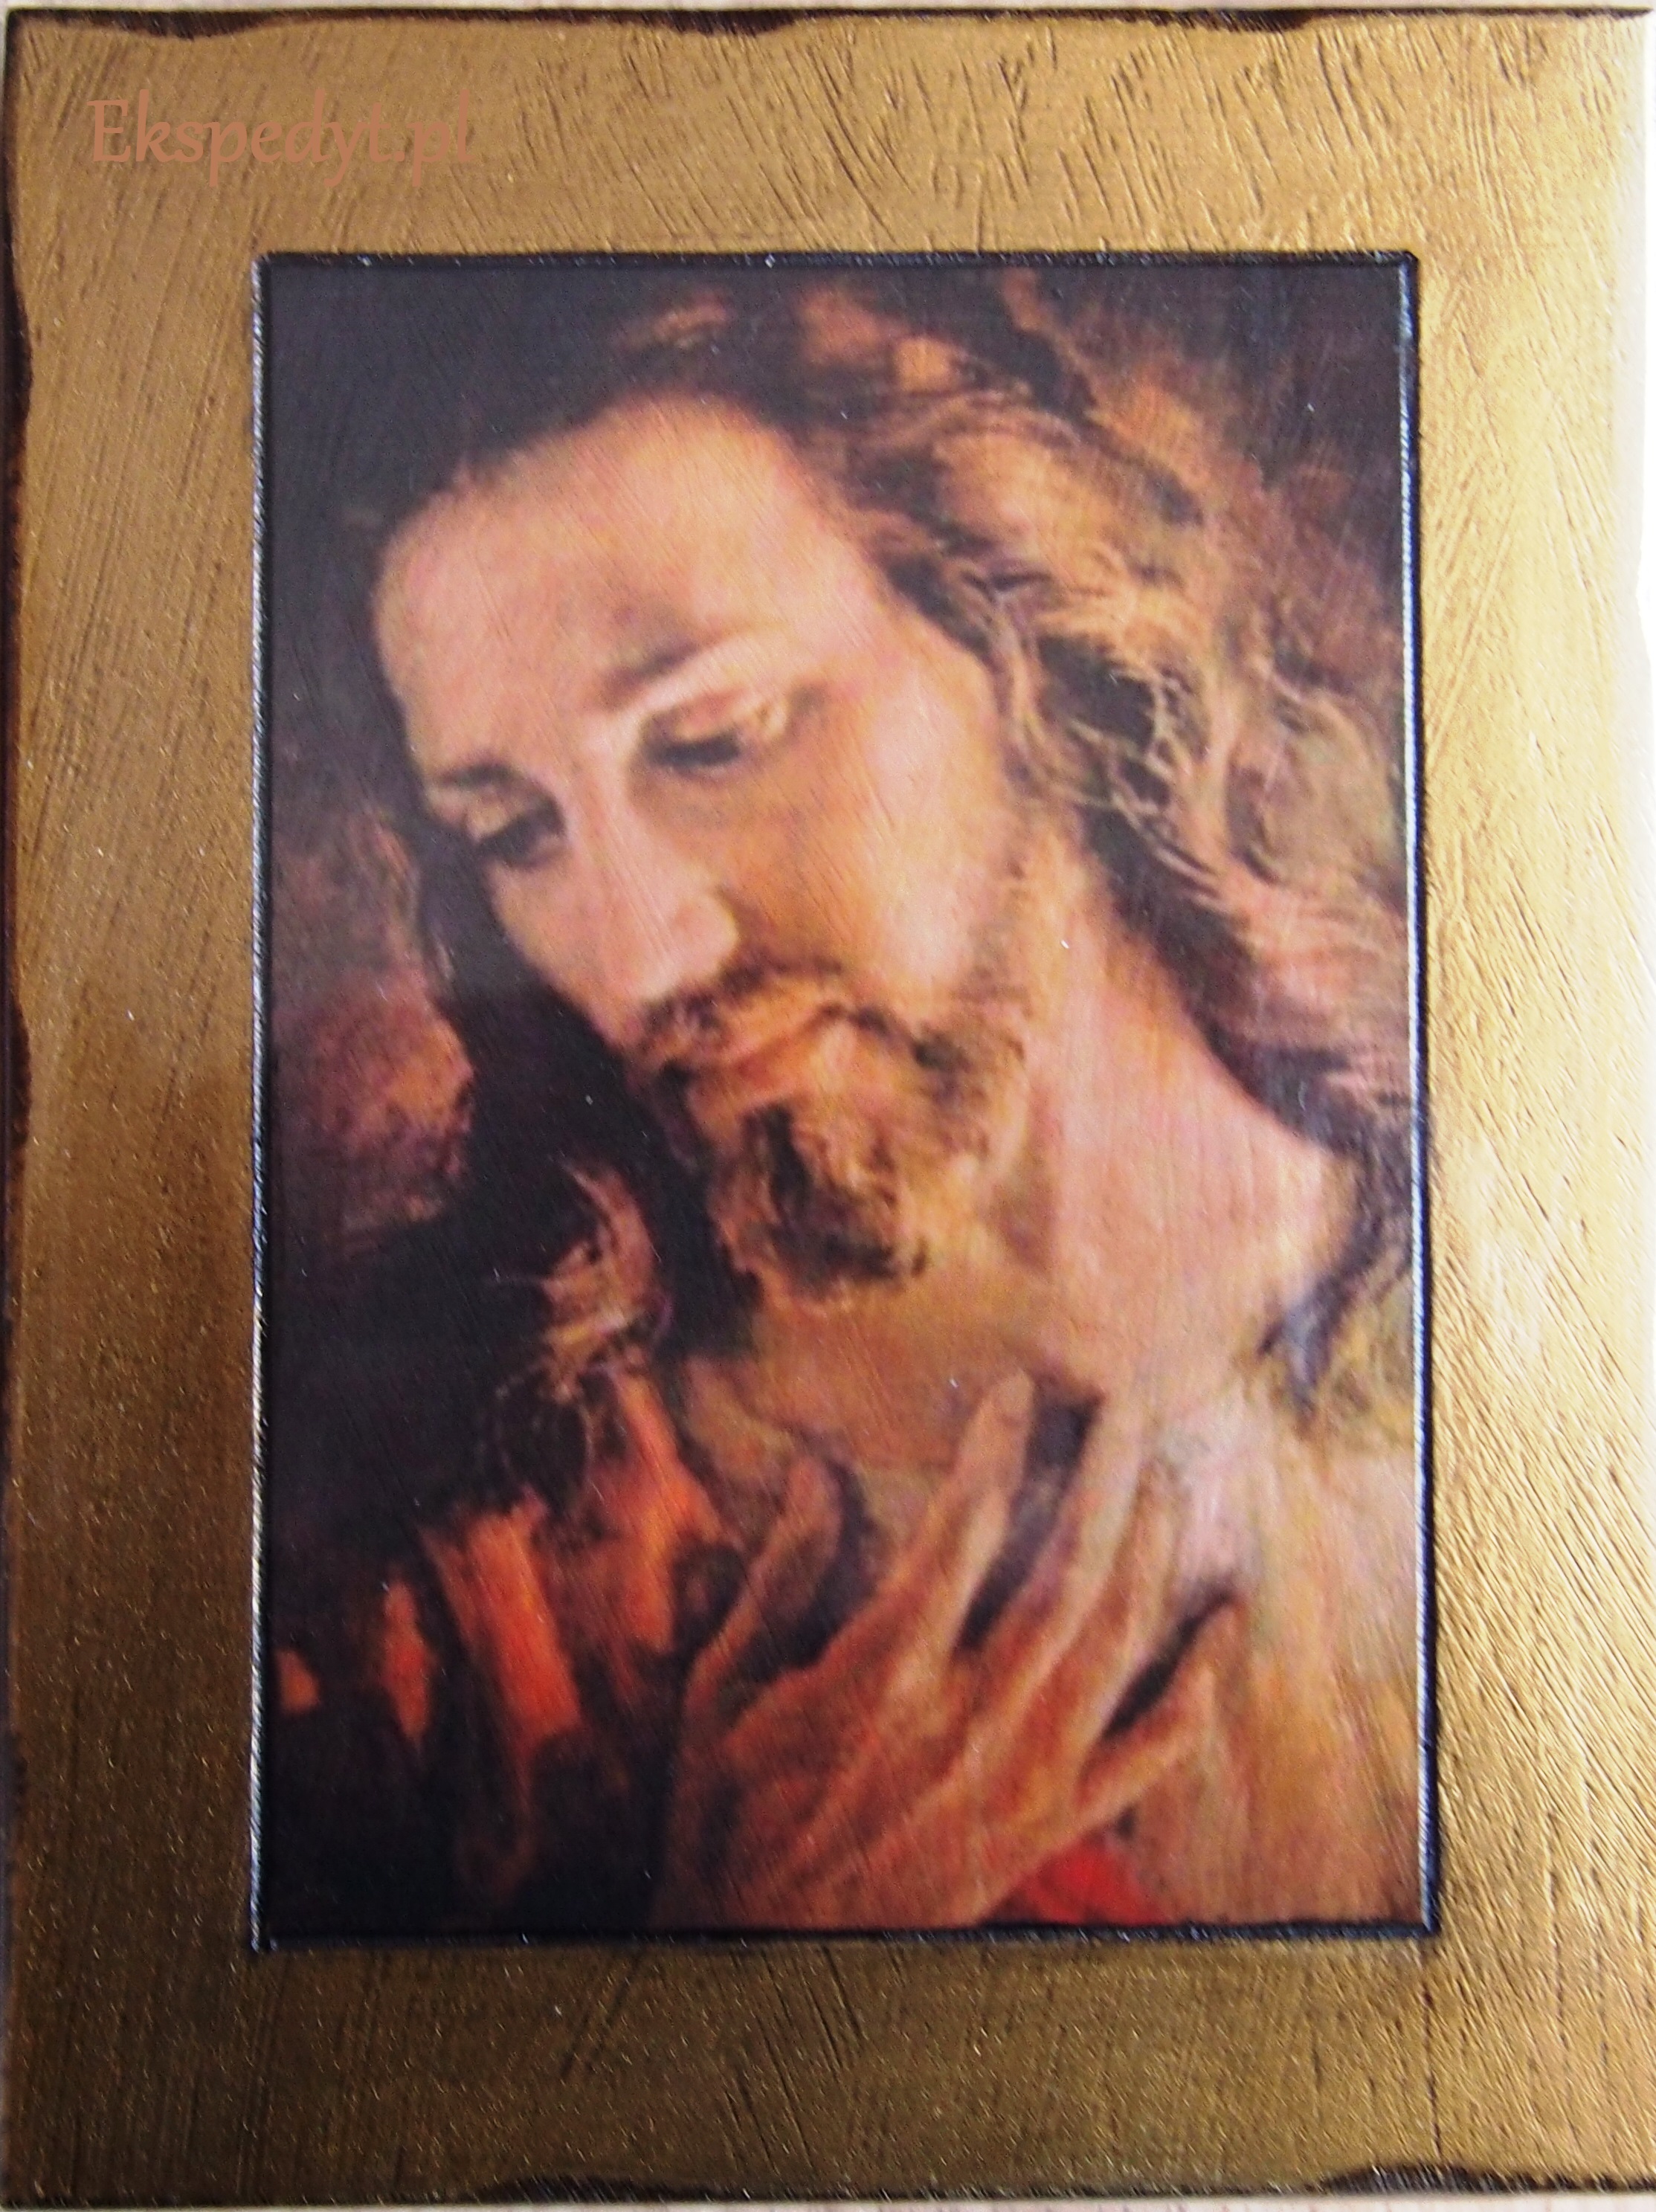 Ikona Oblicze Pana Jezusa zrobione przez br. Elia